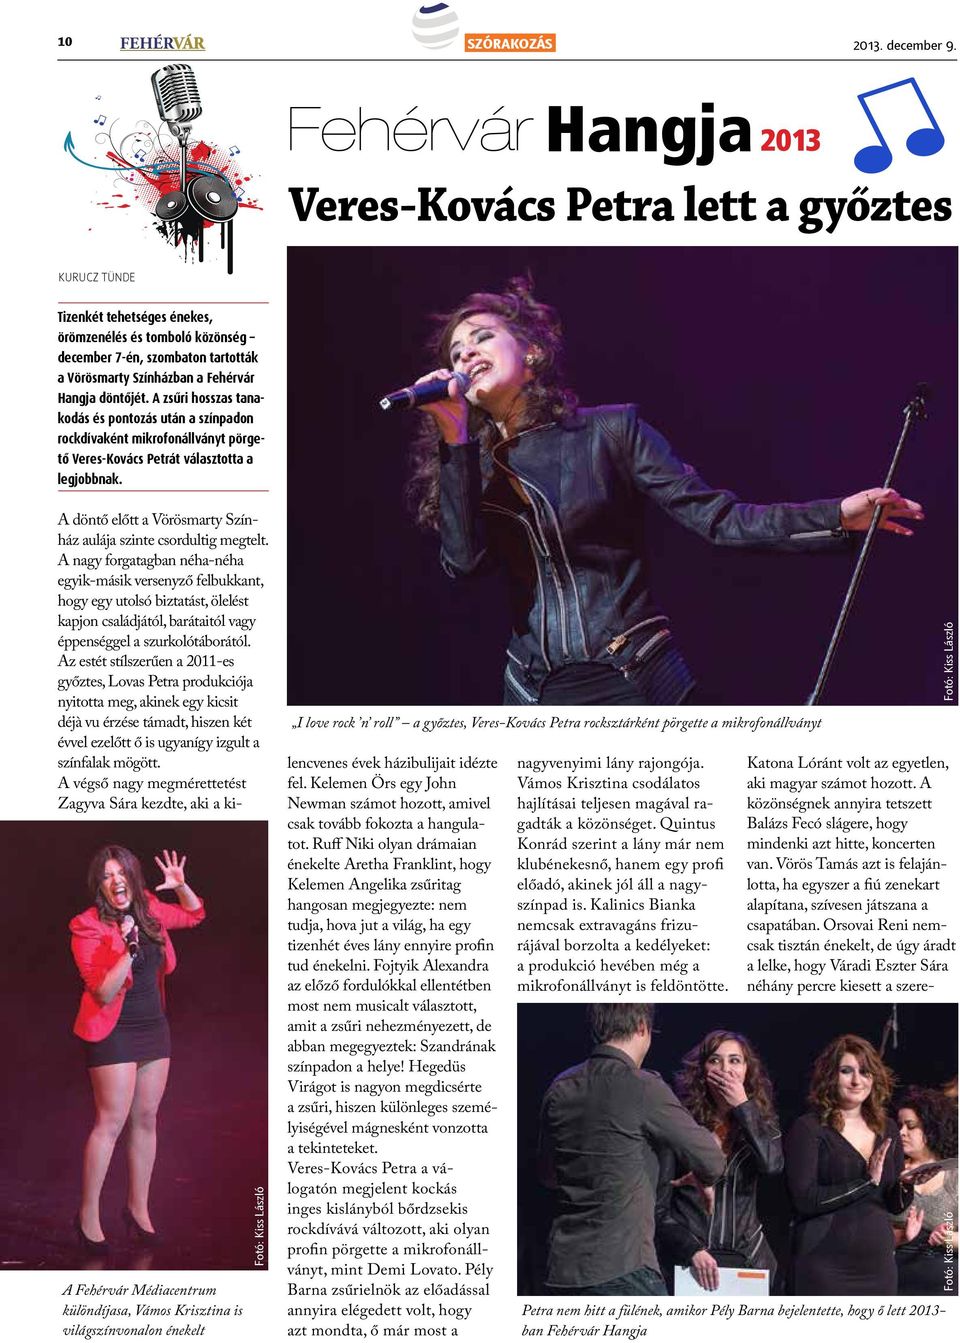 A zsűri hosszas tanakodás és pontozás után a színpadon rockdívaként mikrofonállványt pörgető Veres-Kovács Petrát választotta a legjobbnak.